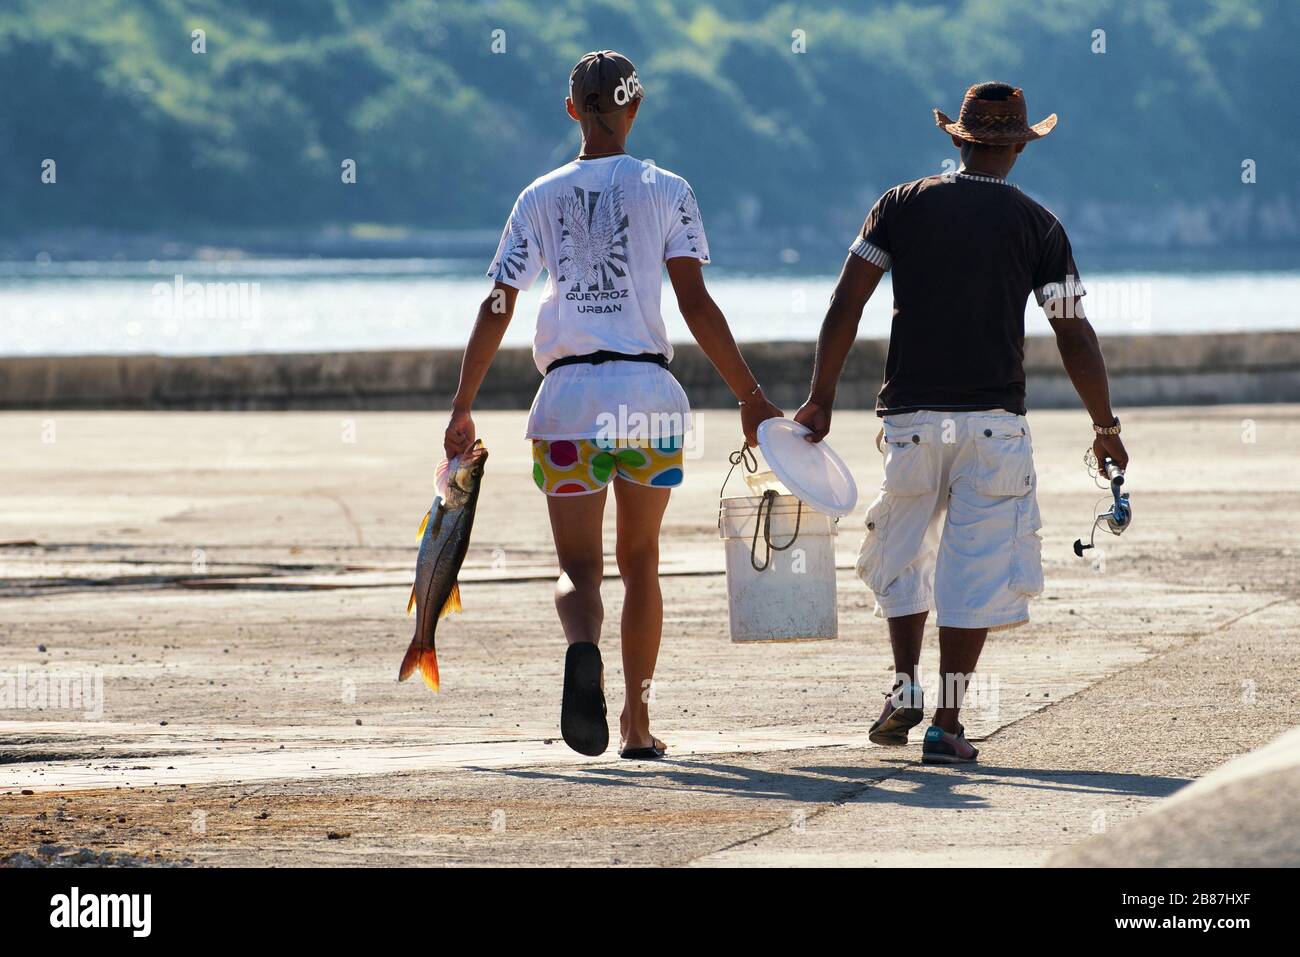 Due pescatori sul lungomare Havana che trasportano un pesce di spigola. Immagine del popolo cubano. Foto Stock